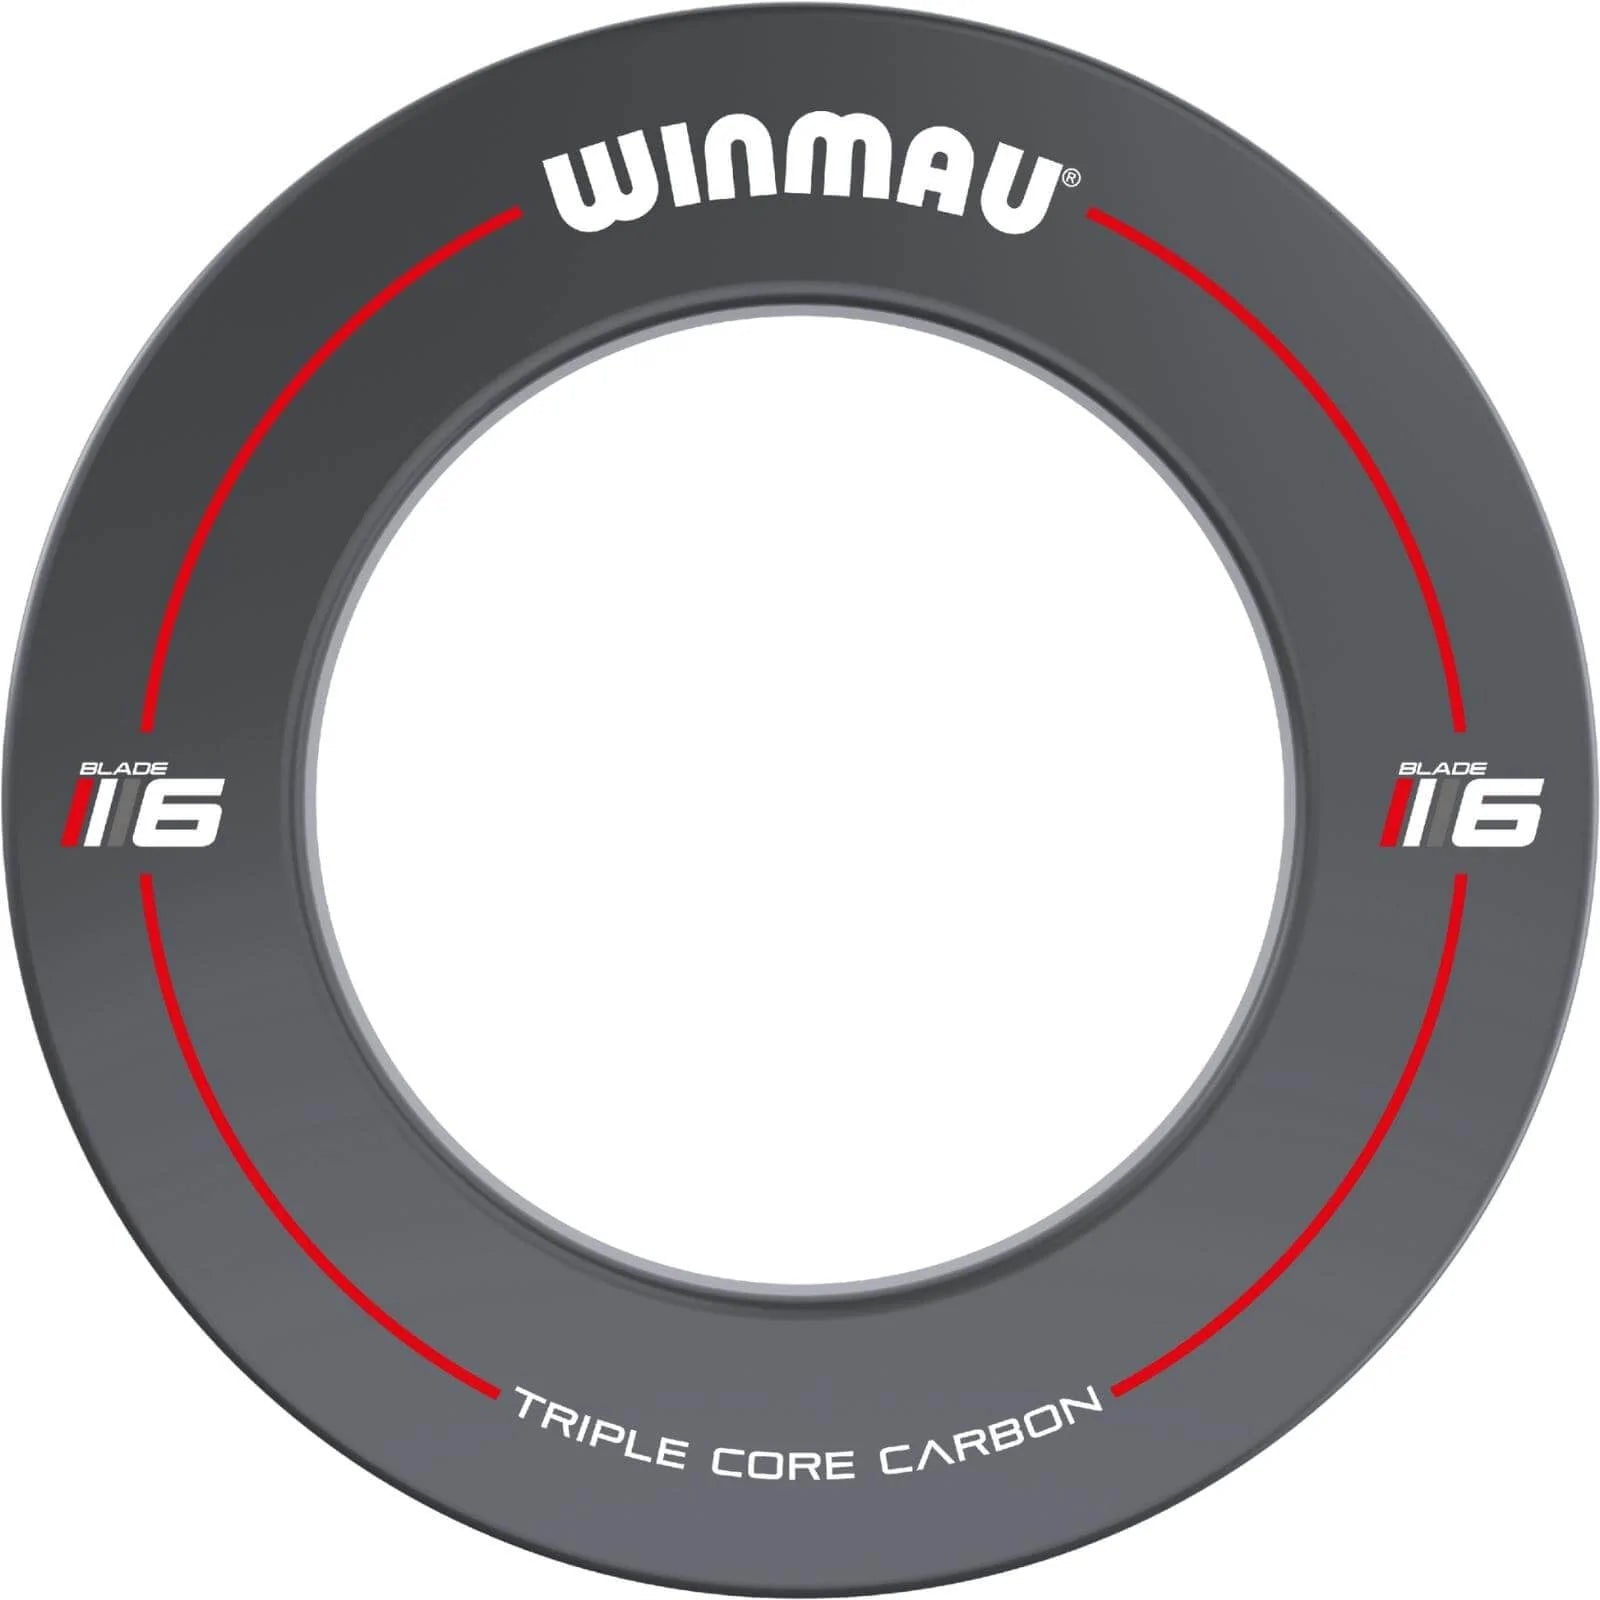 WINMAU - BLADE 6 Printed Dartboard Surround